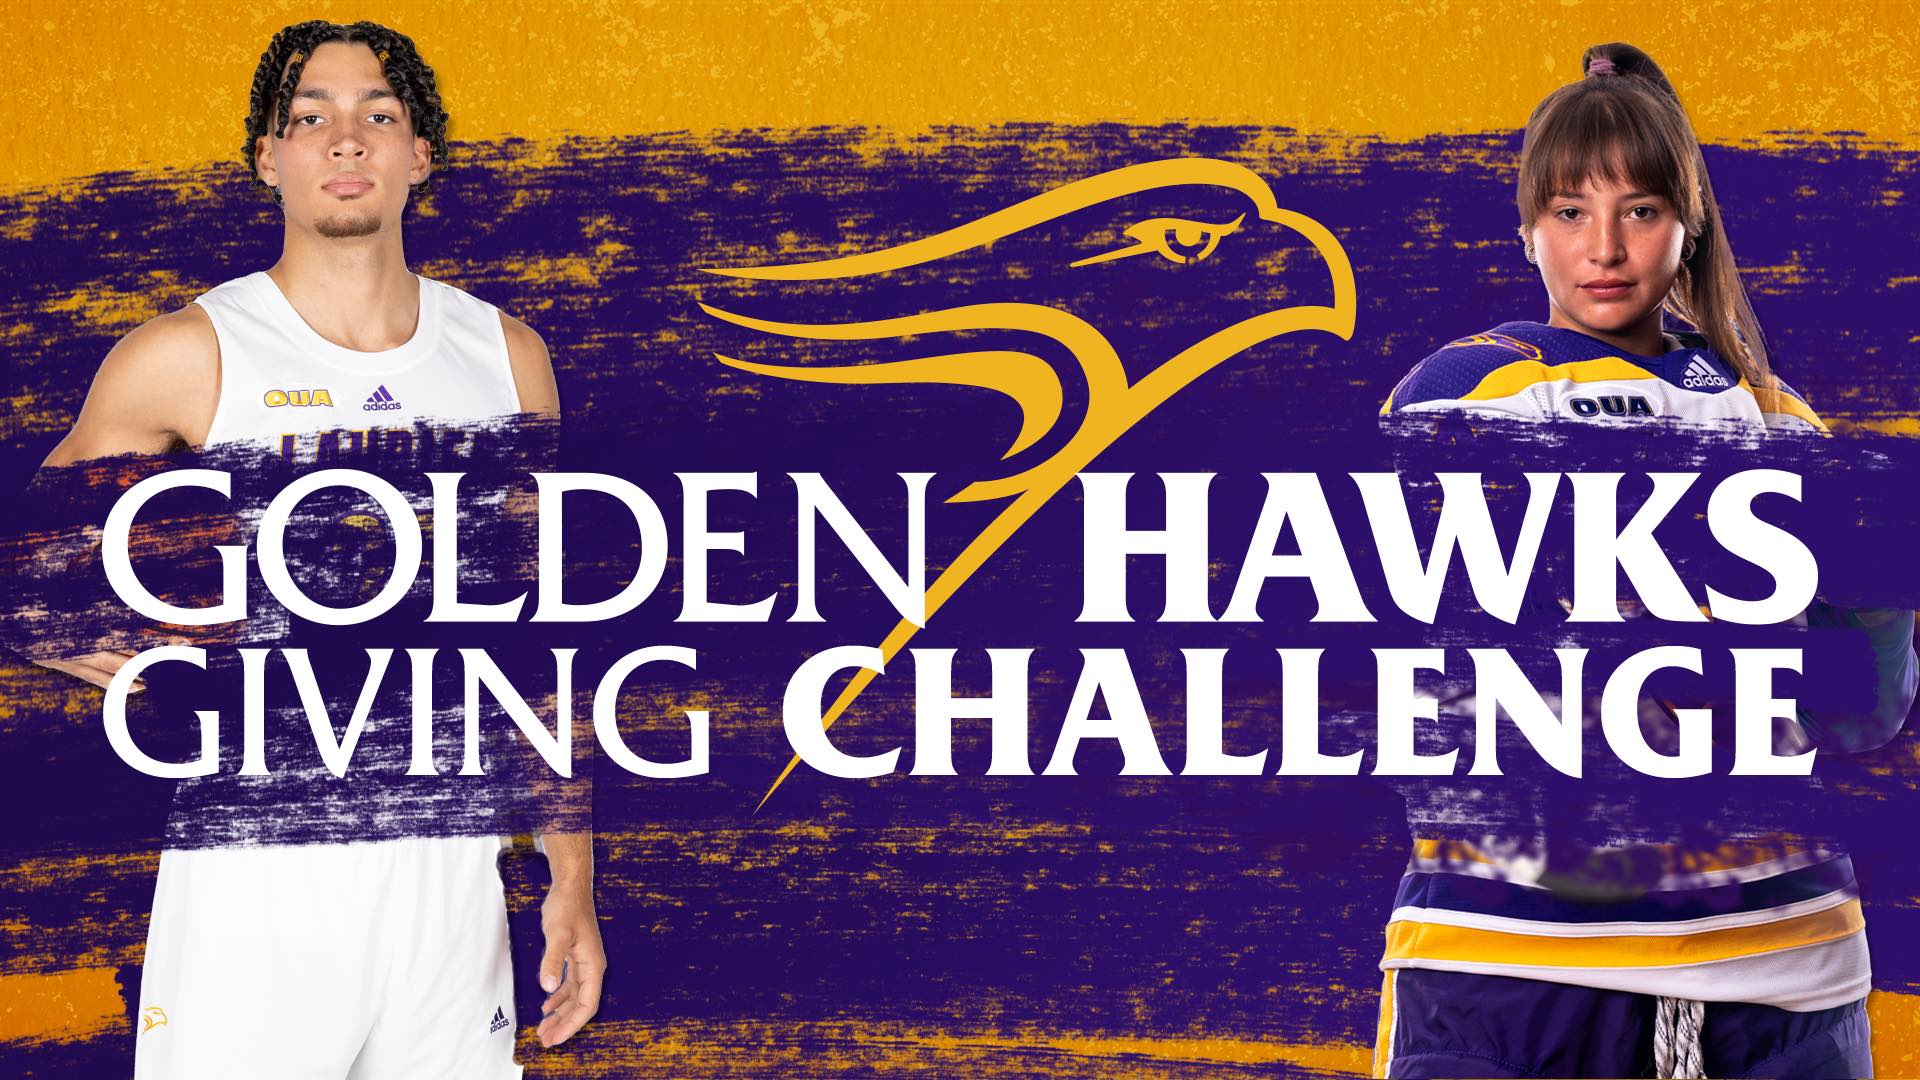 Golden Hawks Giving Challenge